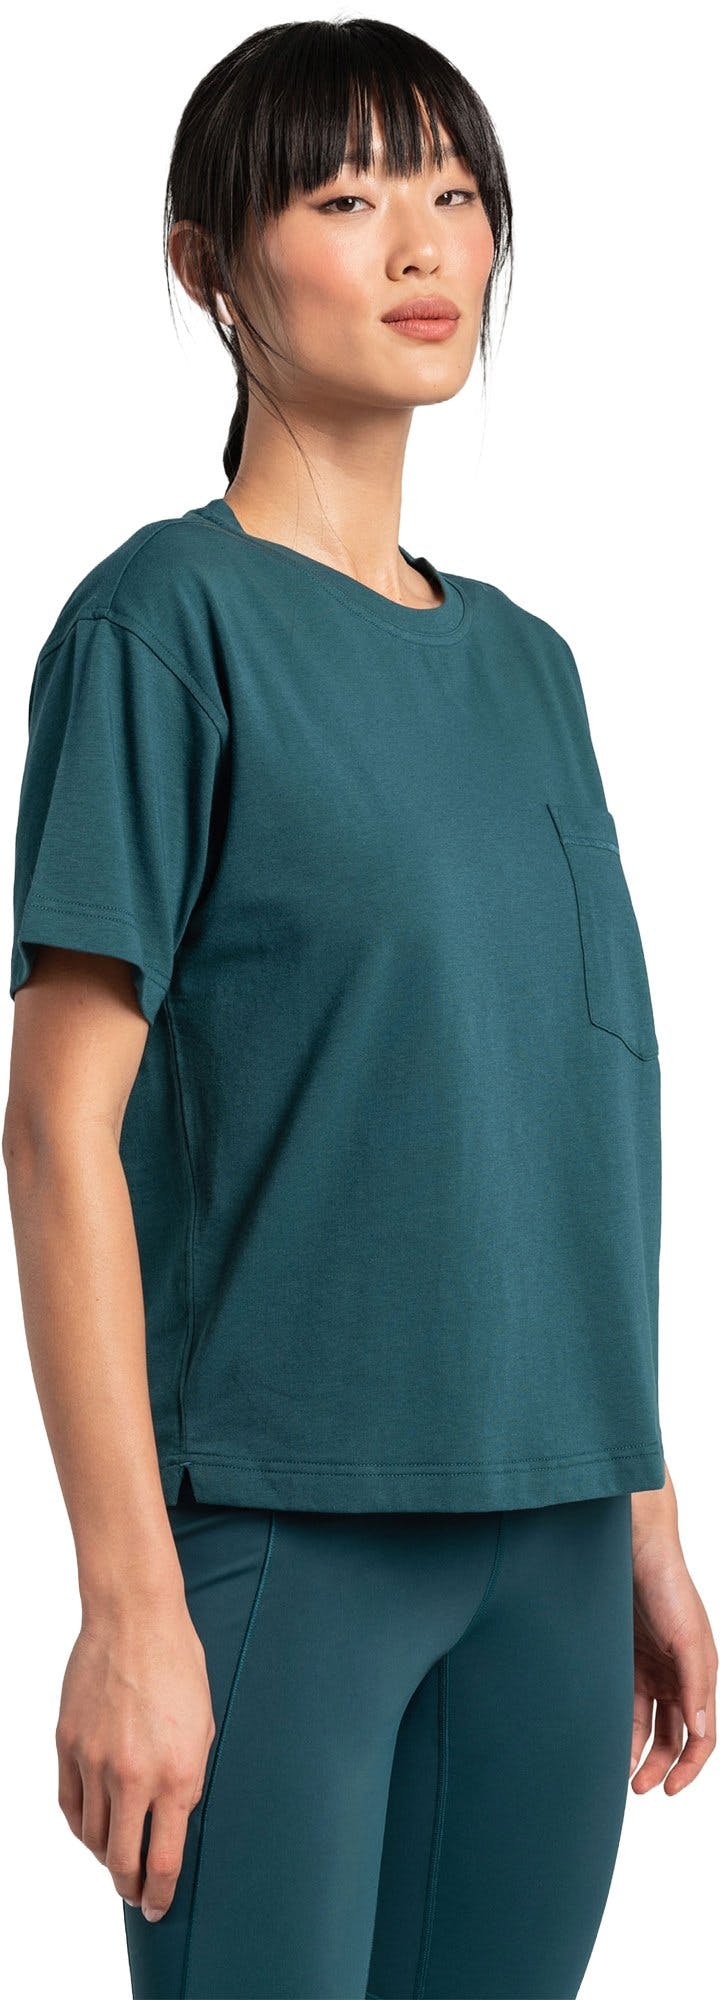 Numéro de l'image de la galerie de produits 5 pour le produit T-shirt en coton Effortless - Femme